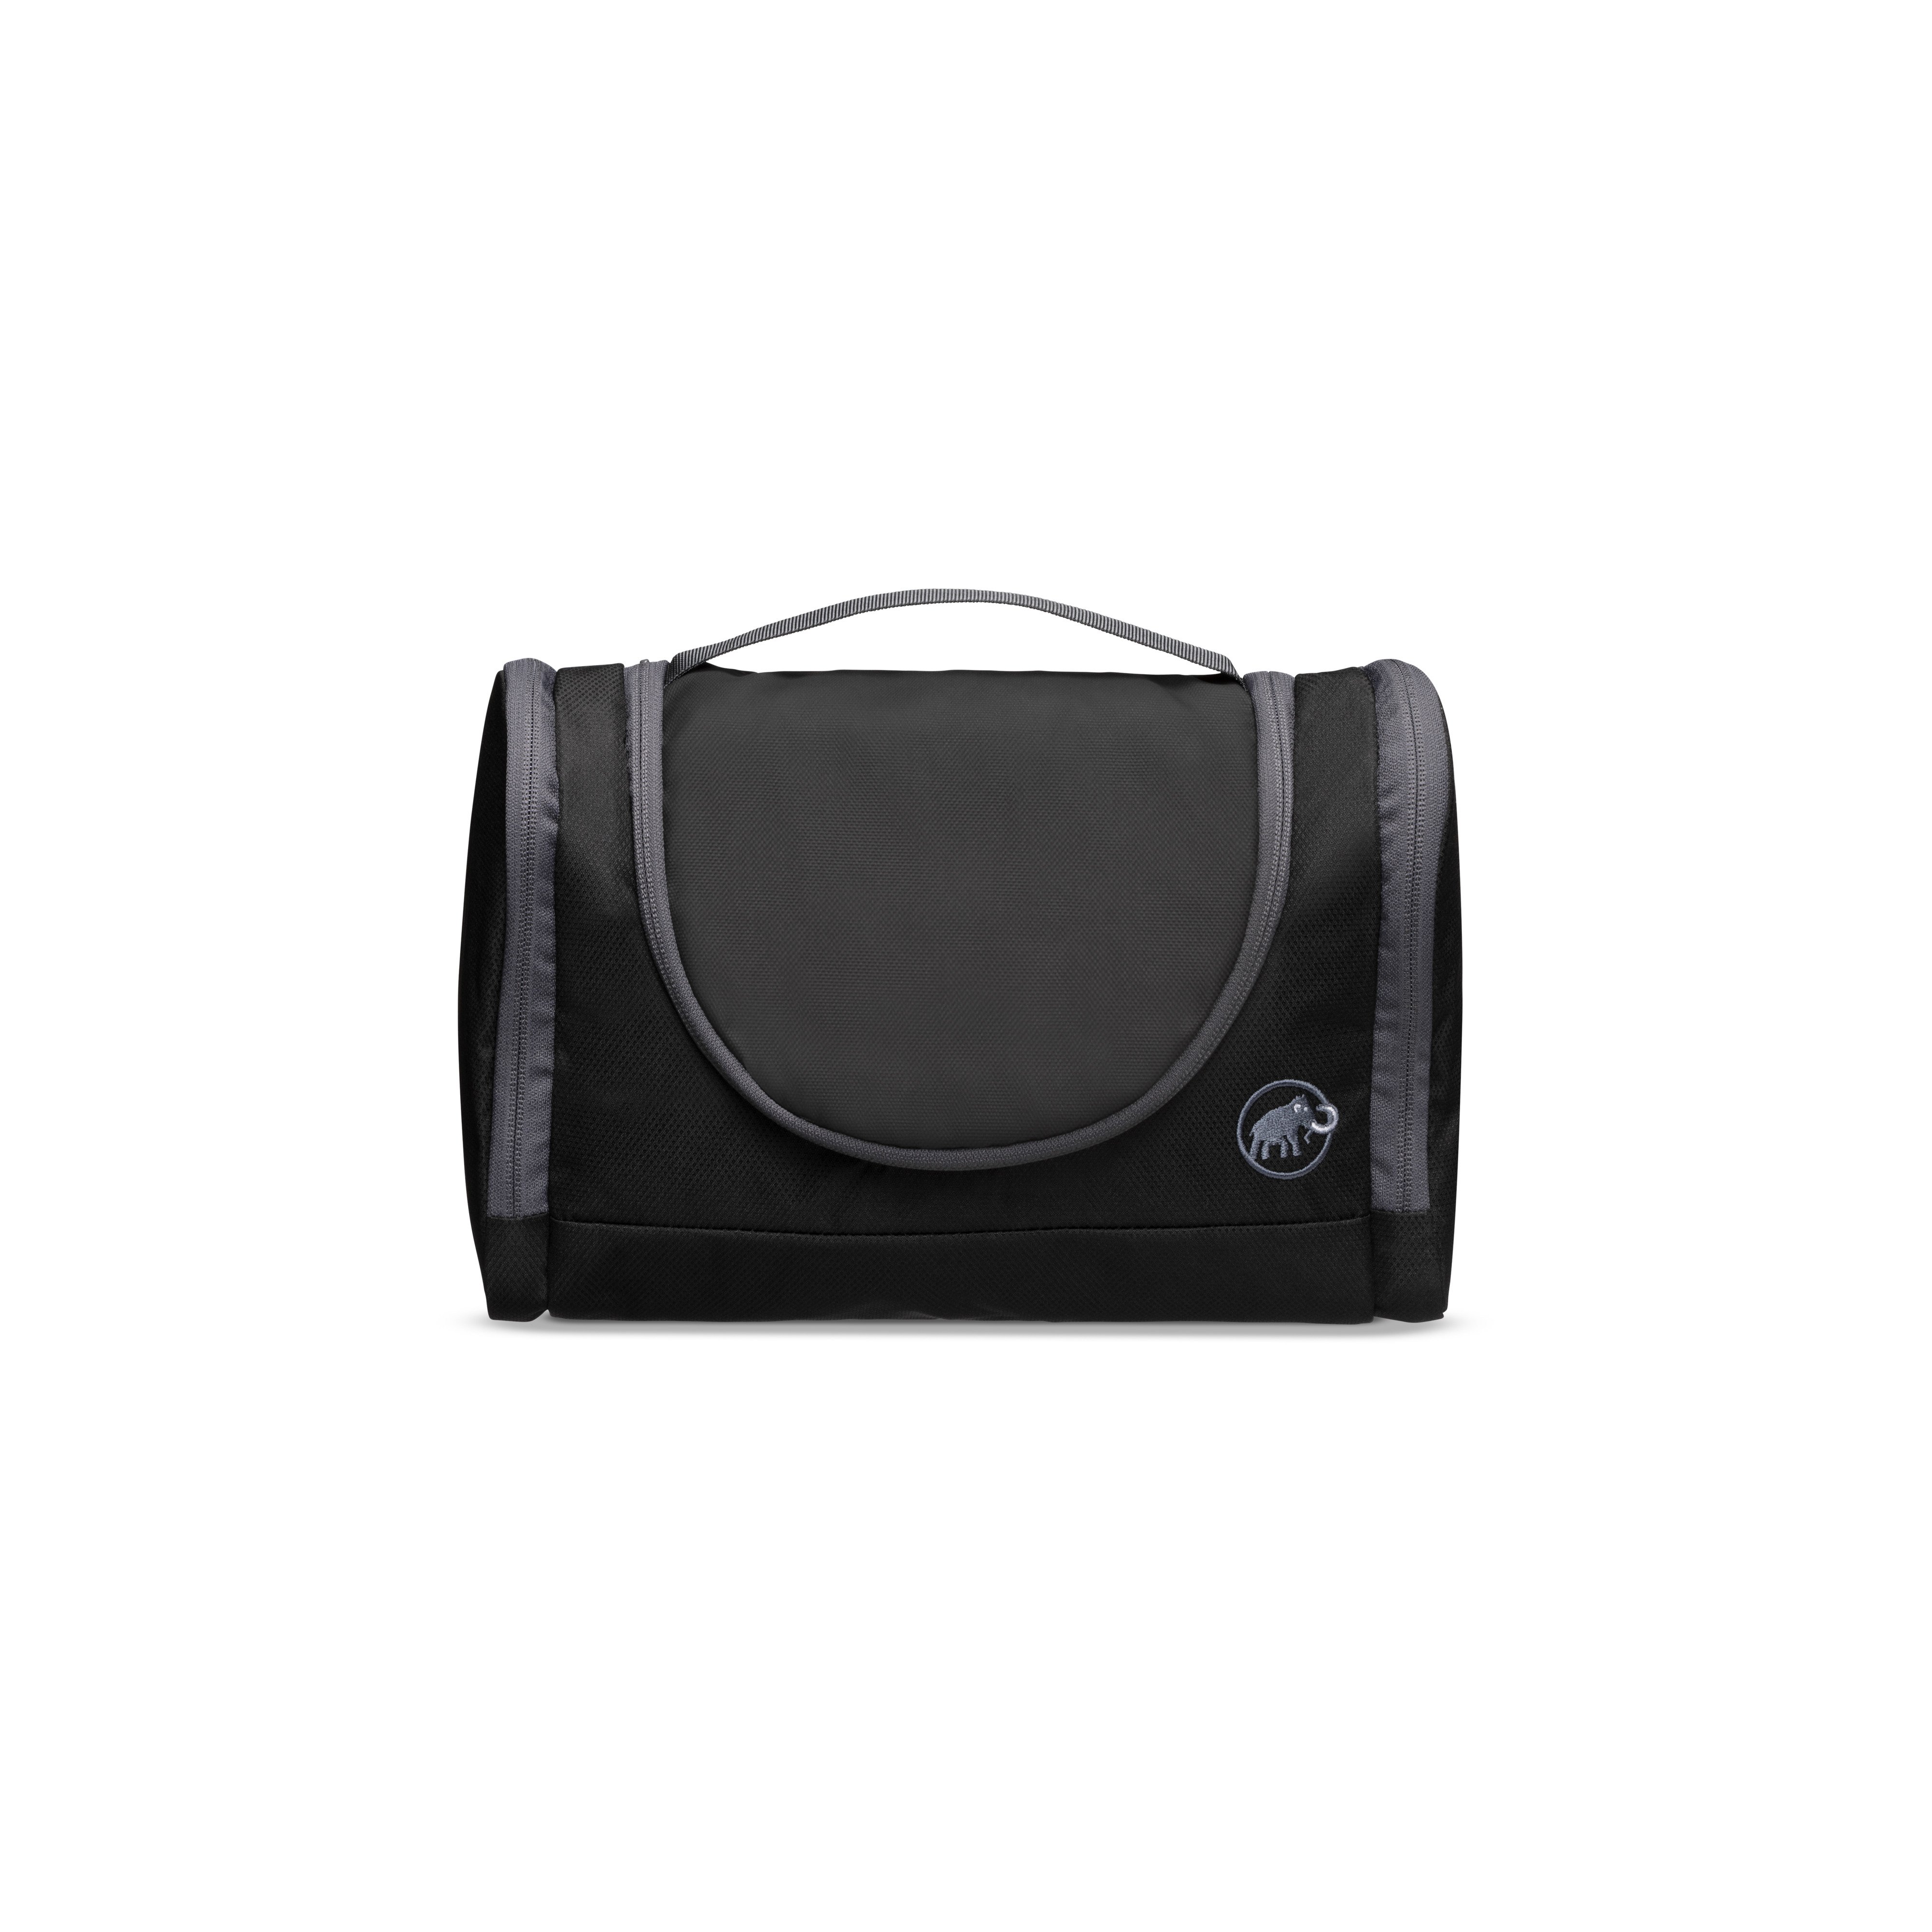 Washbag Roomy - black, one size product image